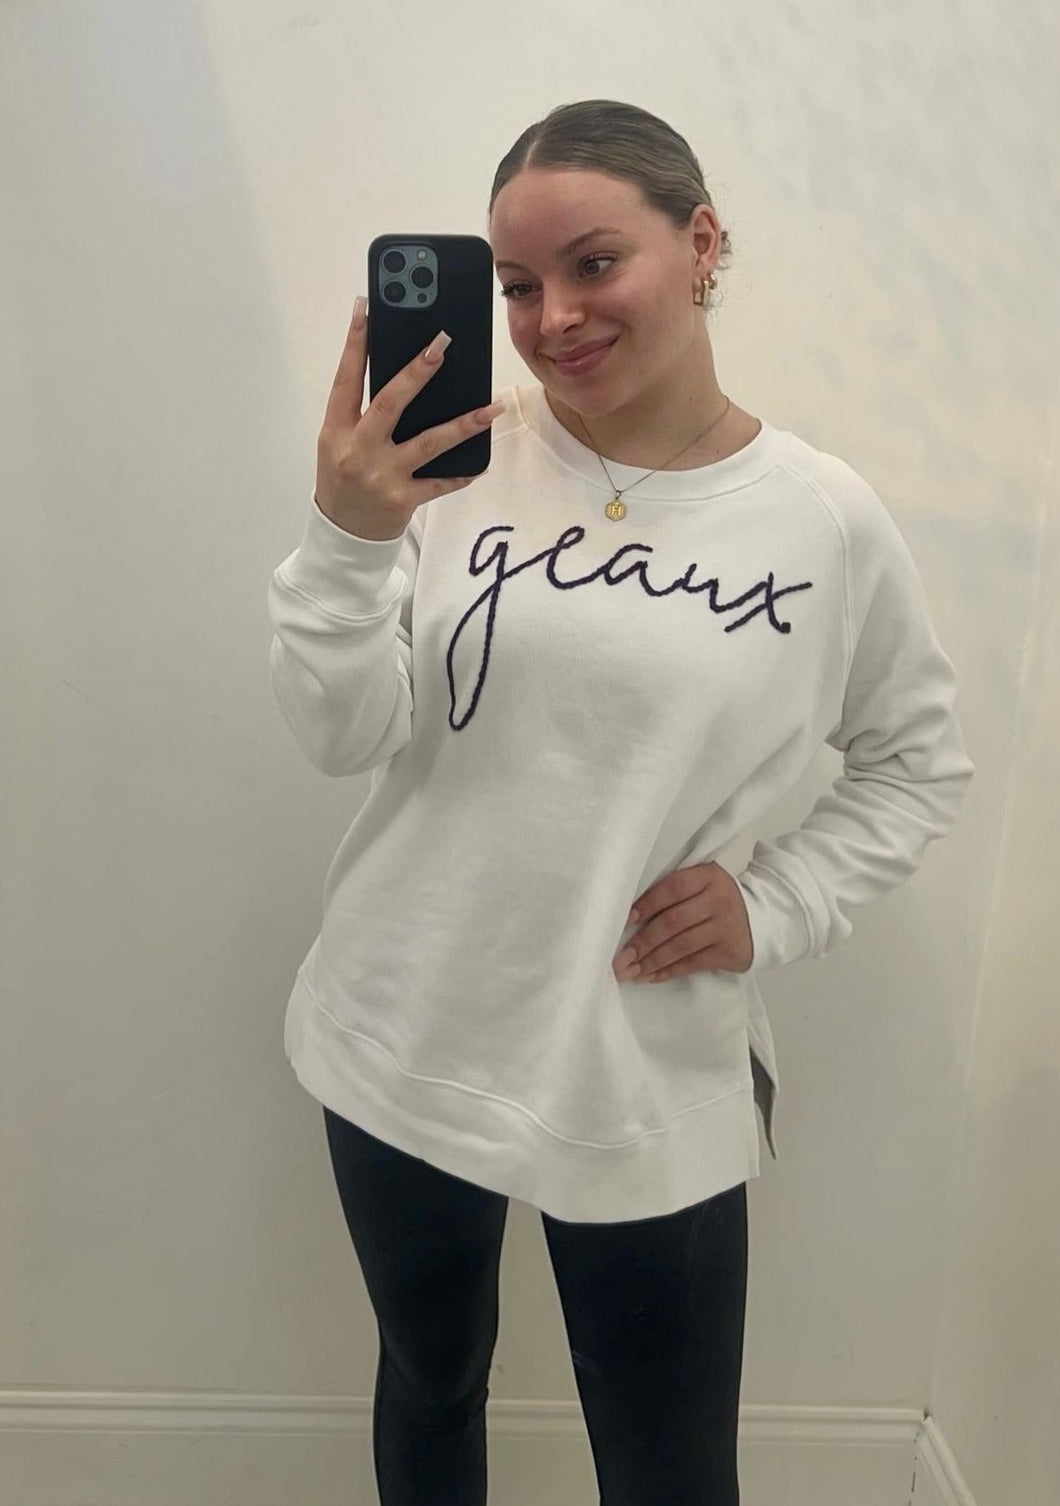 The GEAUX Sweatshirt